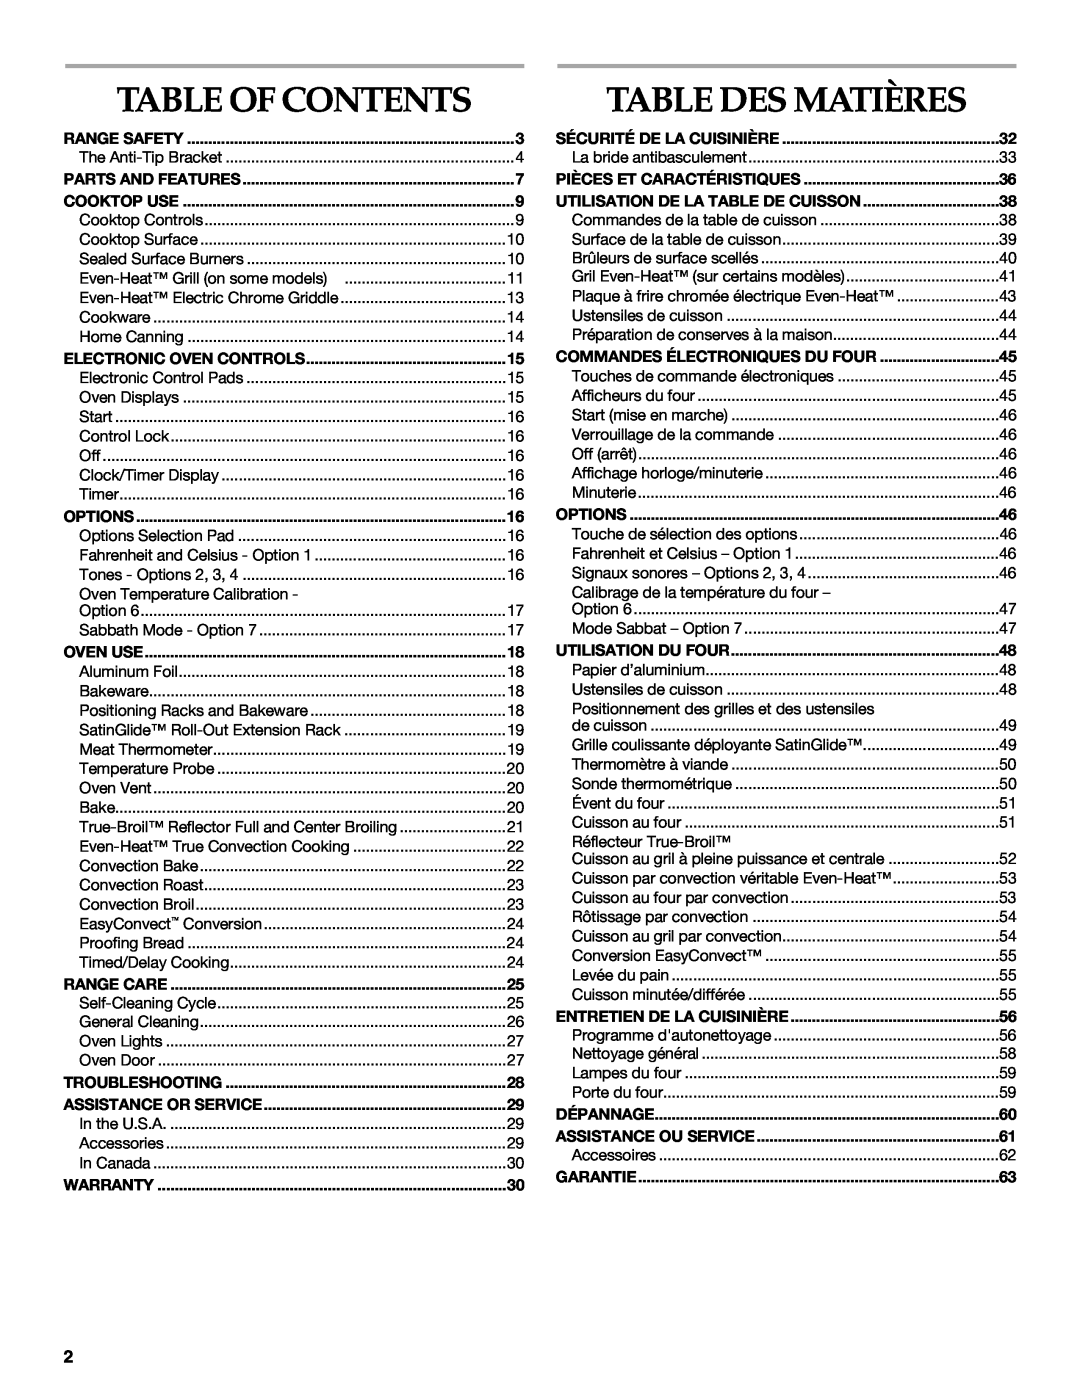 KitchenAid KDRS483, KDRS467, KDRS463, KDRS407, KDRS462 manual Table Of Contents, Table Des Matières 